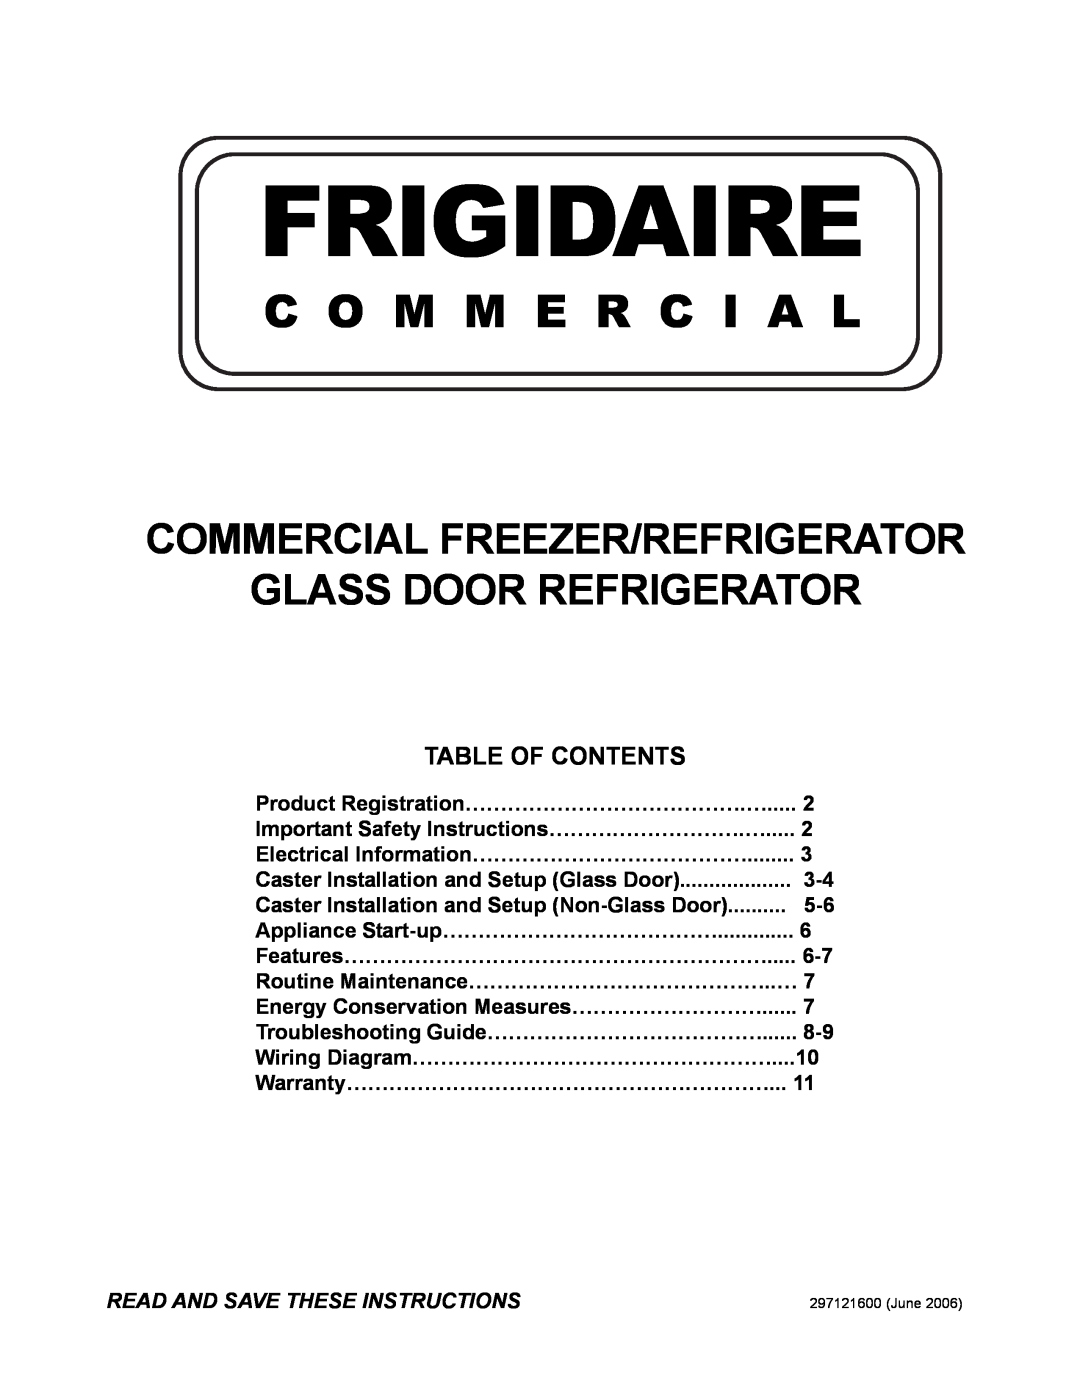 Frigidaire GLASS DOOR REFRIGERATOR important safety instructions C O M M E R C I A L, Table Of Contents, Frigidaire 